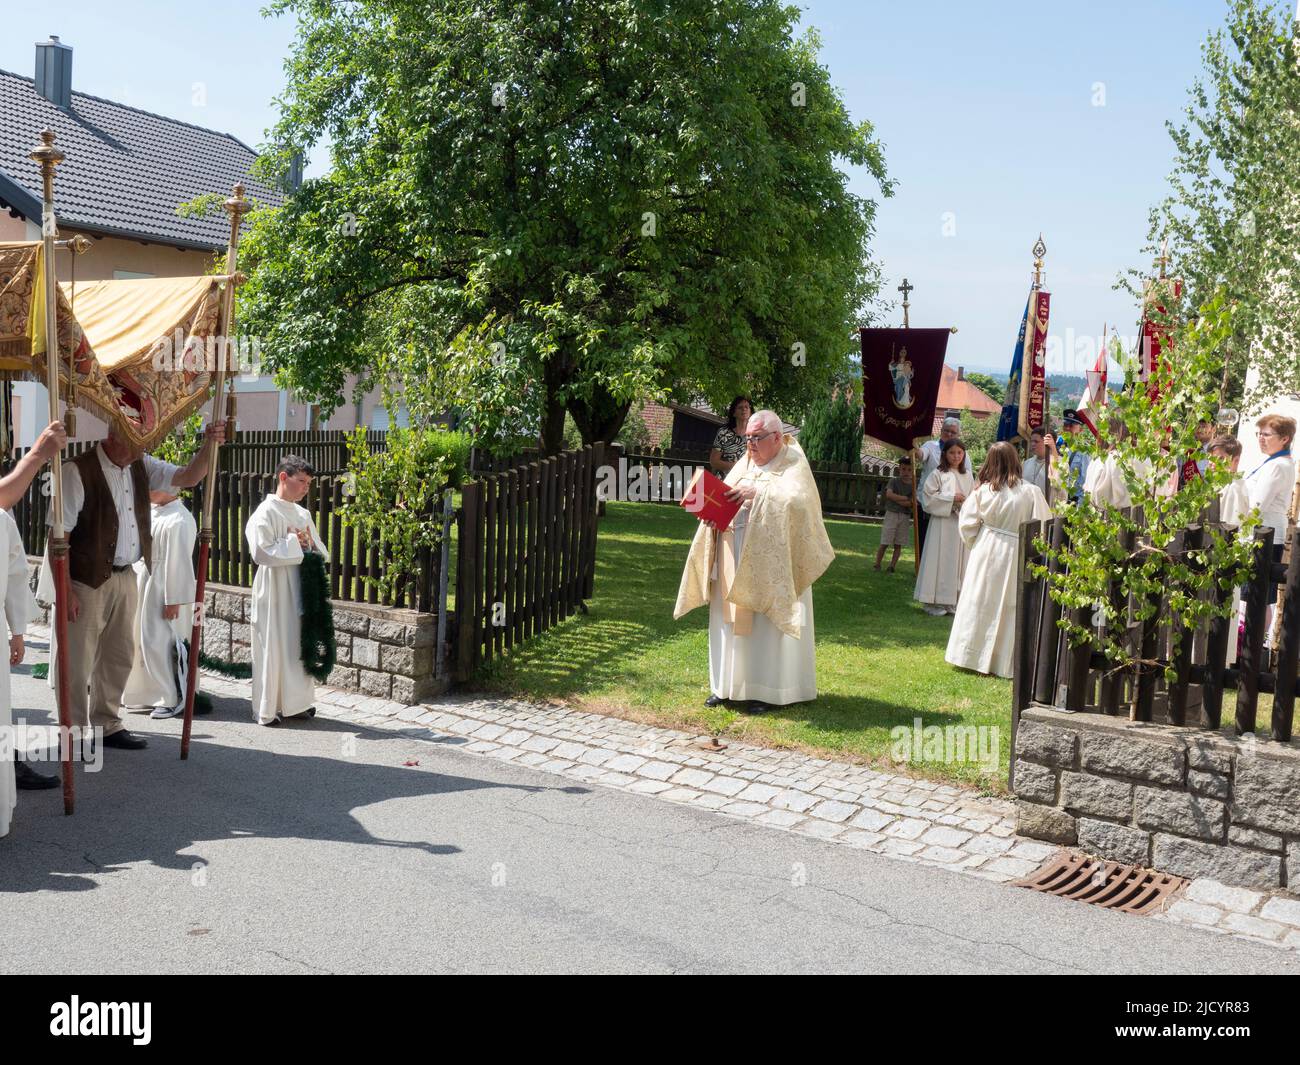 Während der Prozession liest der Priester vor den Gemeindemitgliedern auf der Straße eine Predigt vor. Katholiken des Dorfes Garham machen eine Prozession zu Ehren der Feier des Leibes und Blutes Jesu Christi. Stockfoto